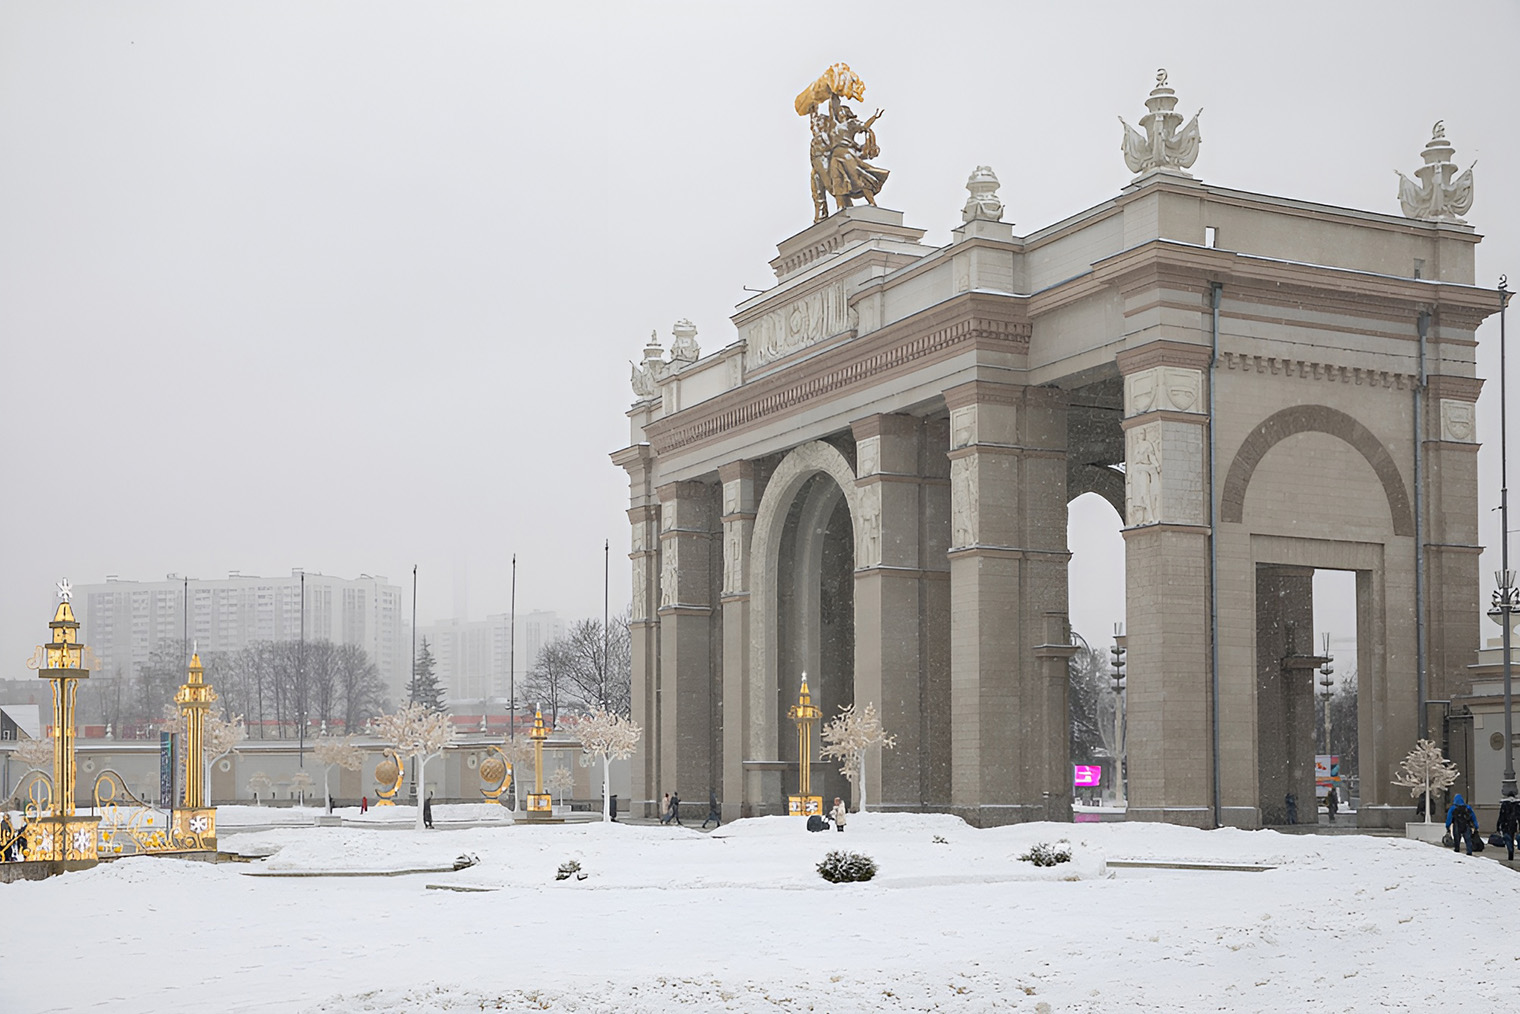 Так выглядит арка главного входа на ВДНХ. Источник: vdnh.ru